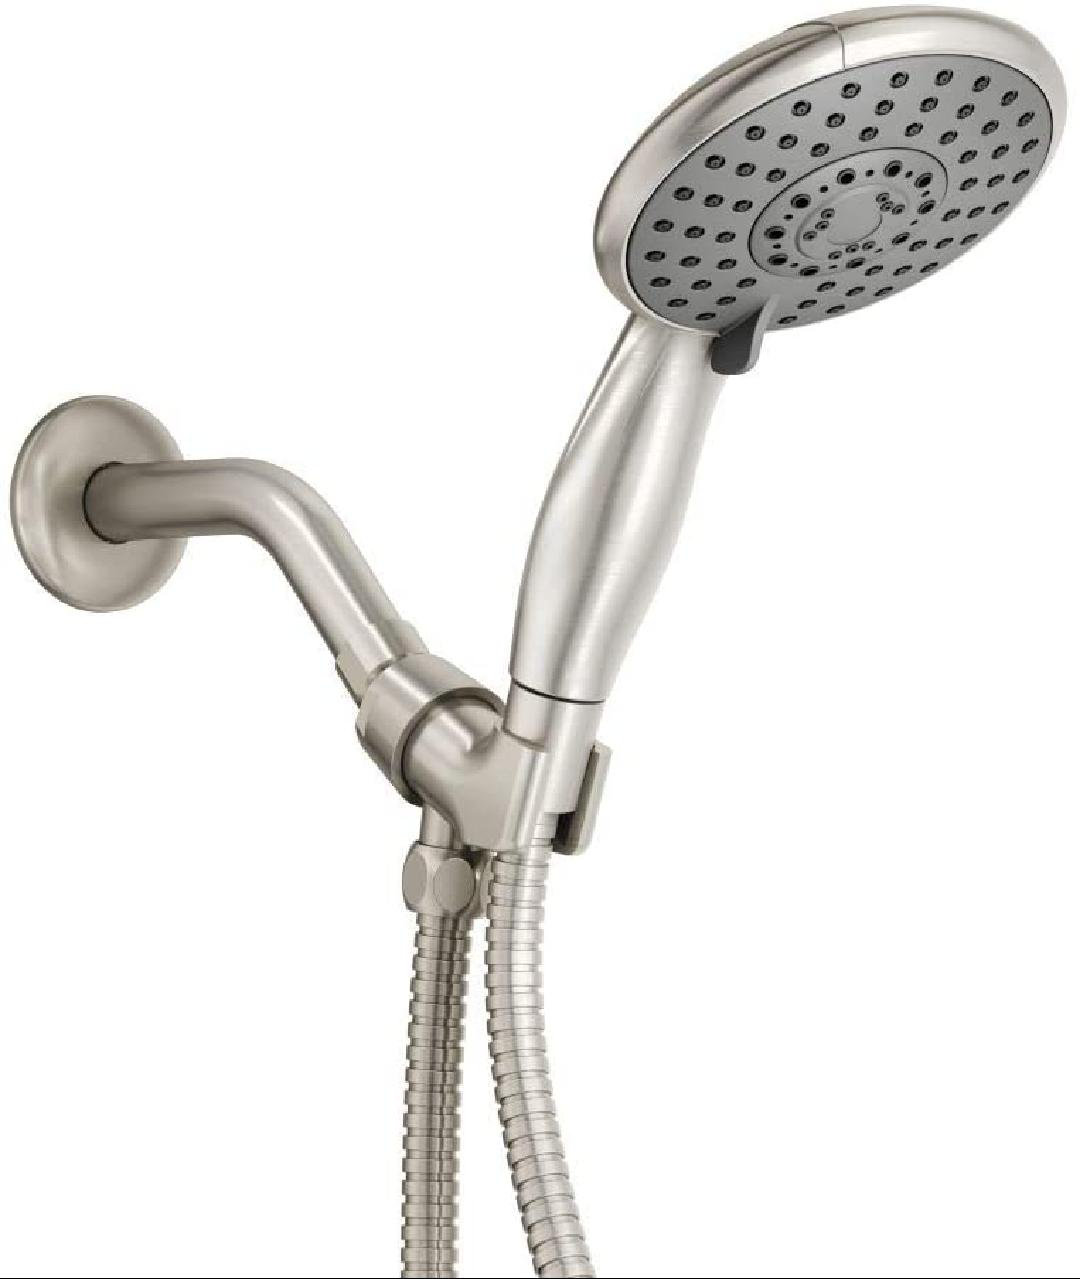 Brushed Nickel Telephone Style Bathroom Water Saving Hand Held Shower Head Spray